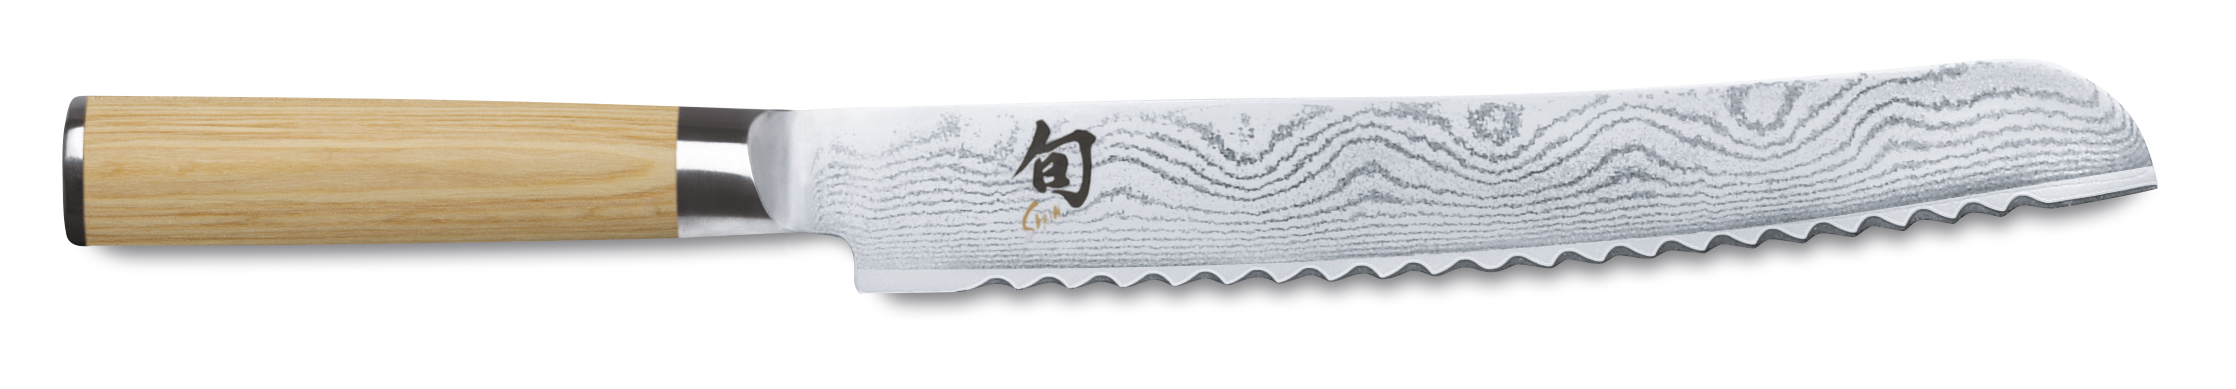 Kai Shun White Brotmesser, spezieller Wellenschliff